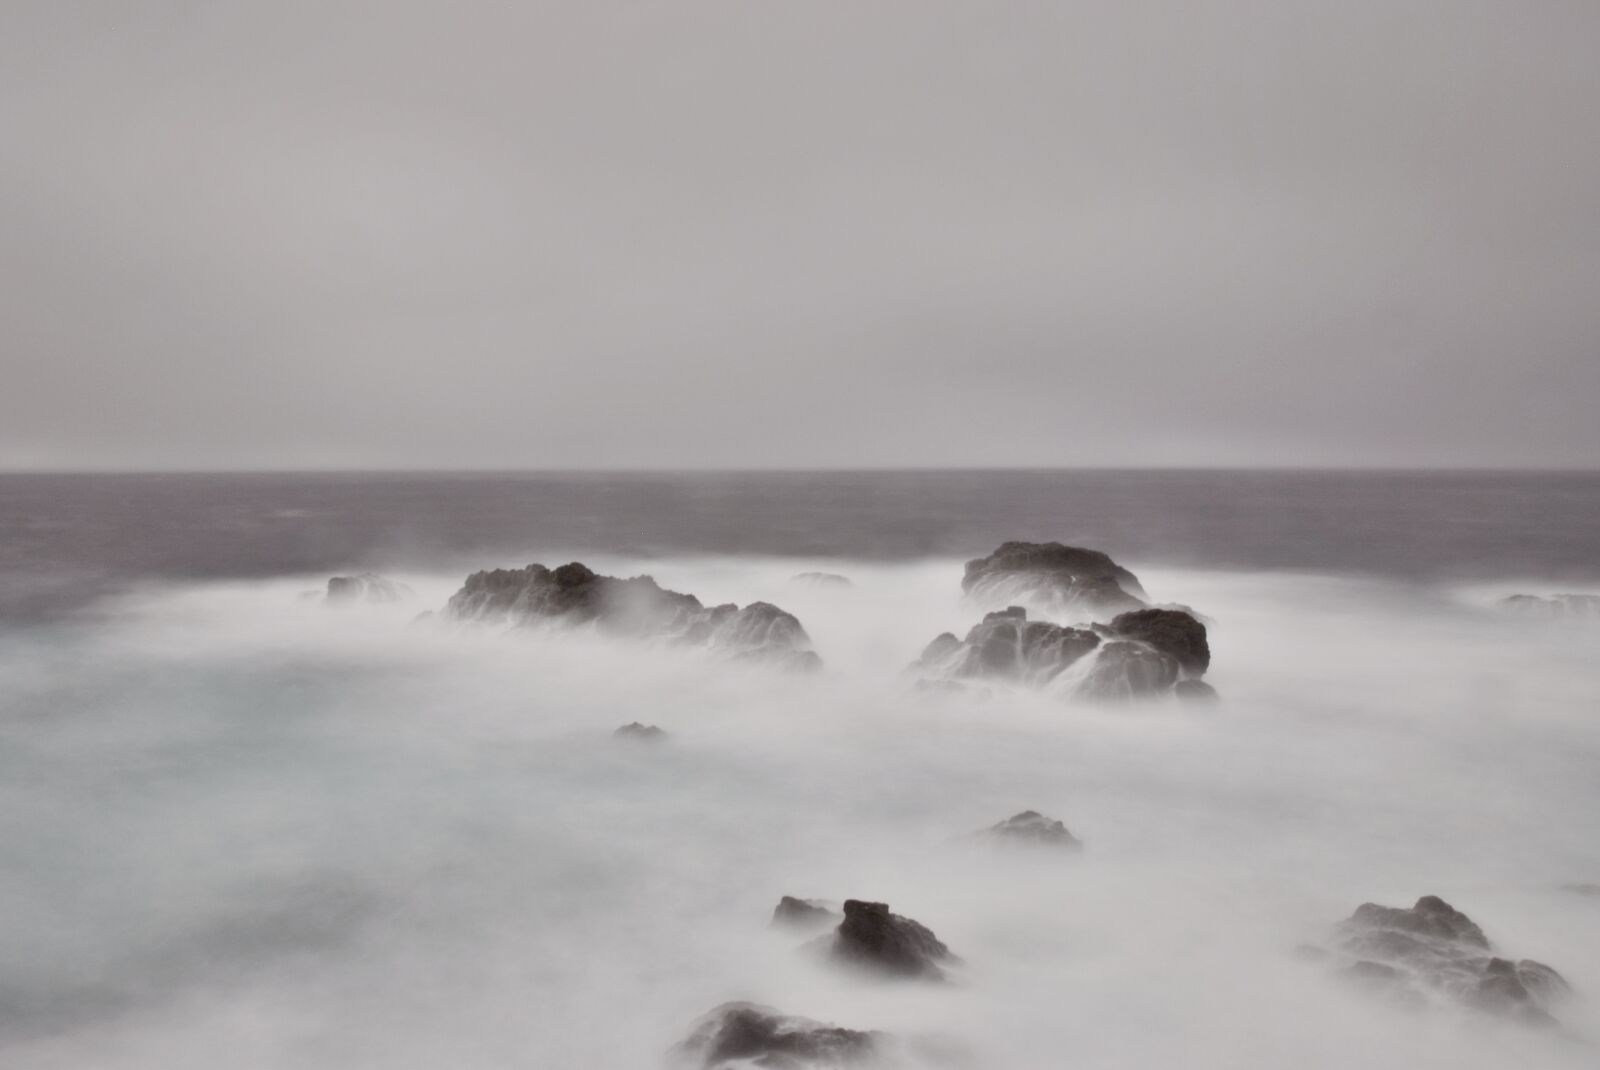 Fujifilm FinePix S5 Pro sample photo. Sea, rockyshore, rough sea photography